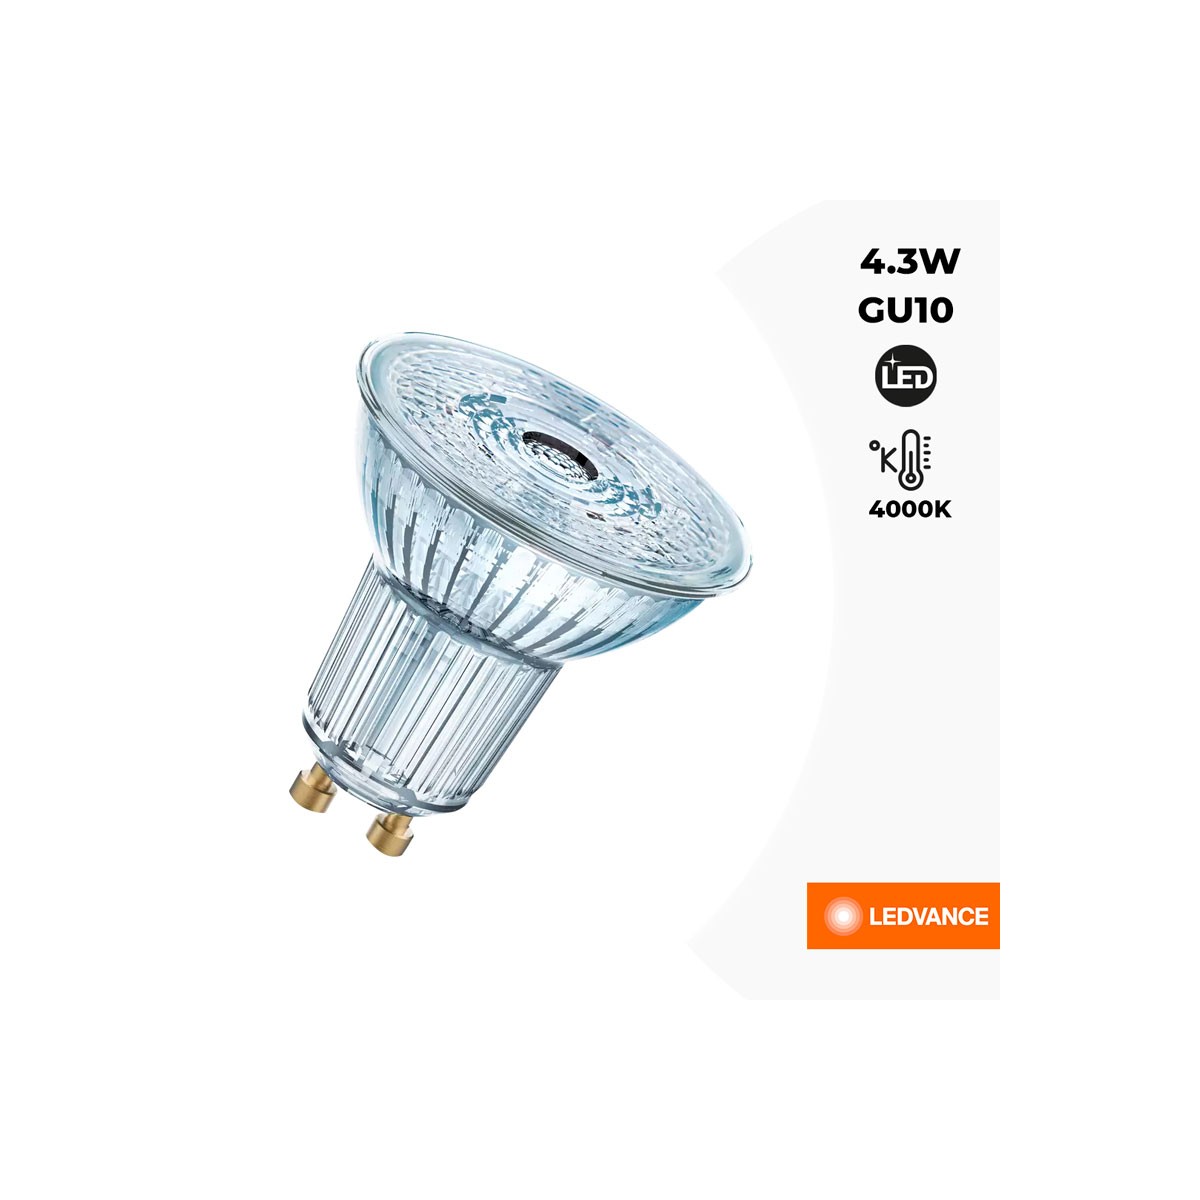 LED-Lampe VALUE PAR16 50 GU10 36º 4,3W 4000K